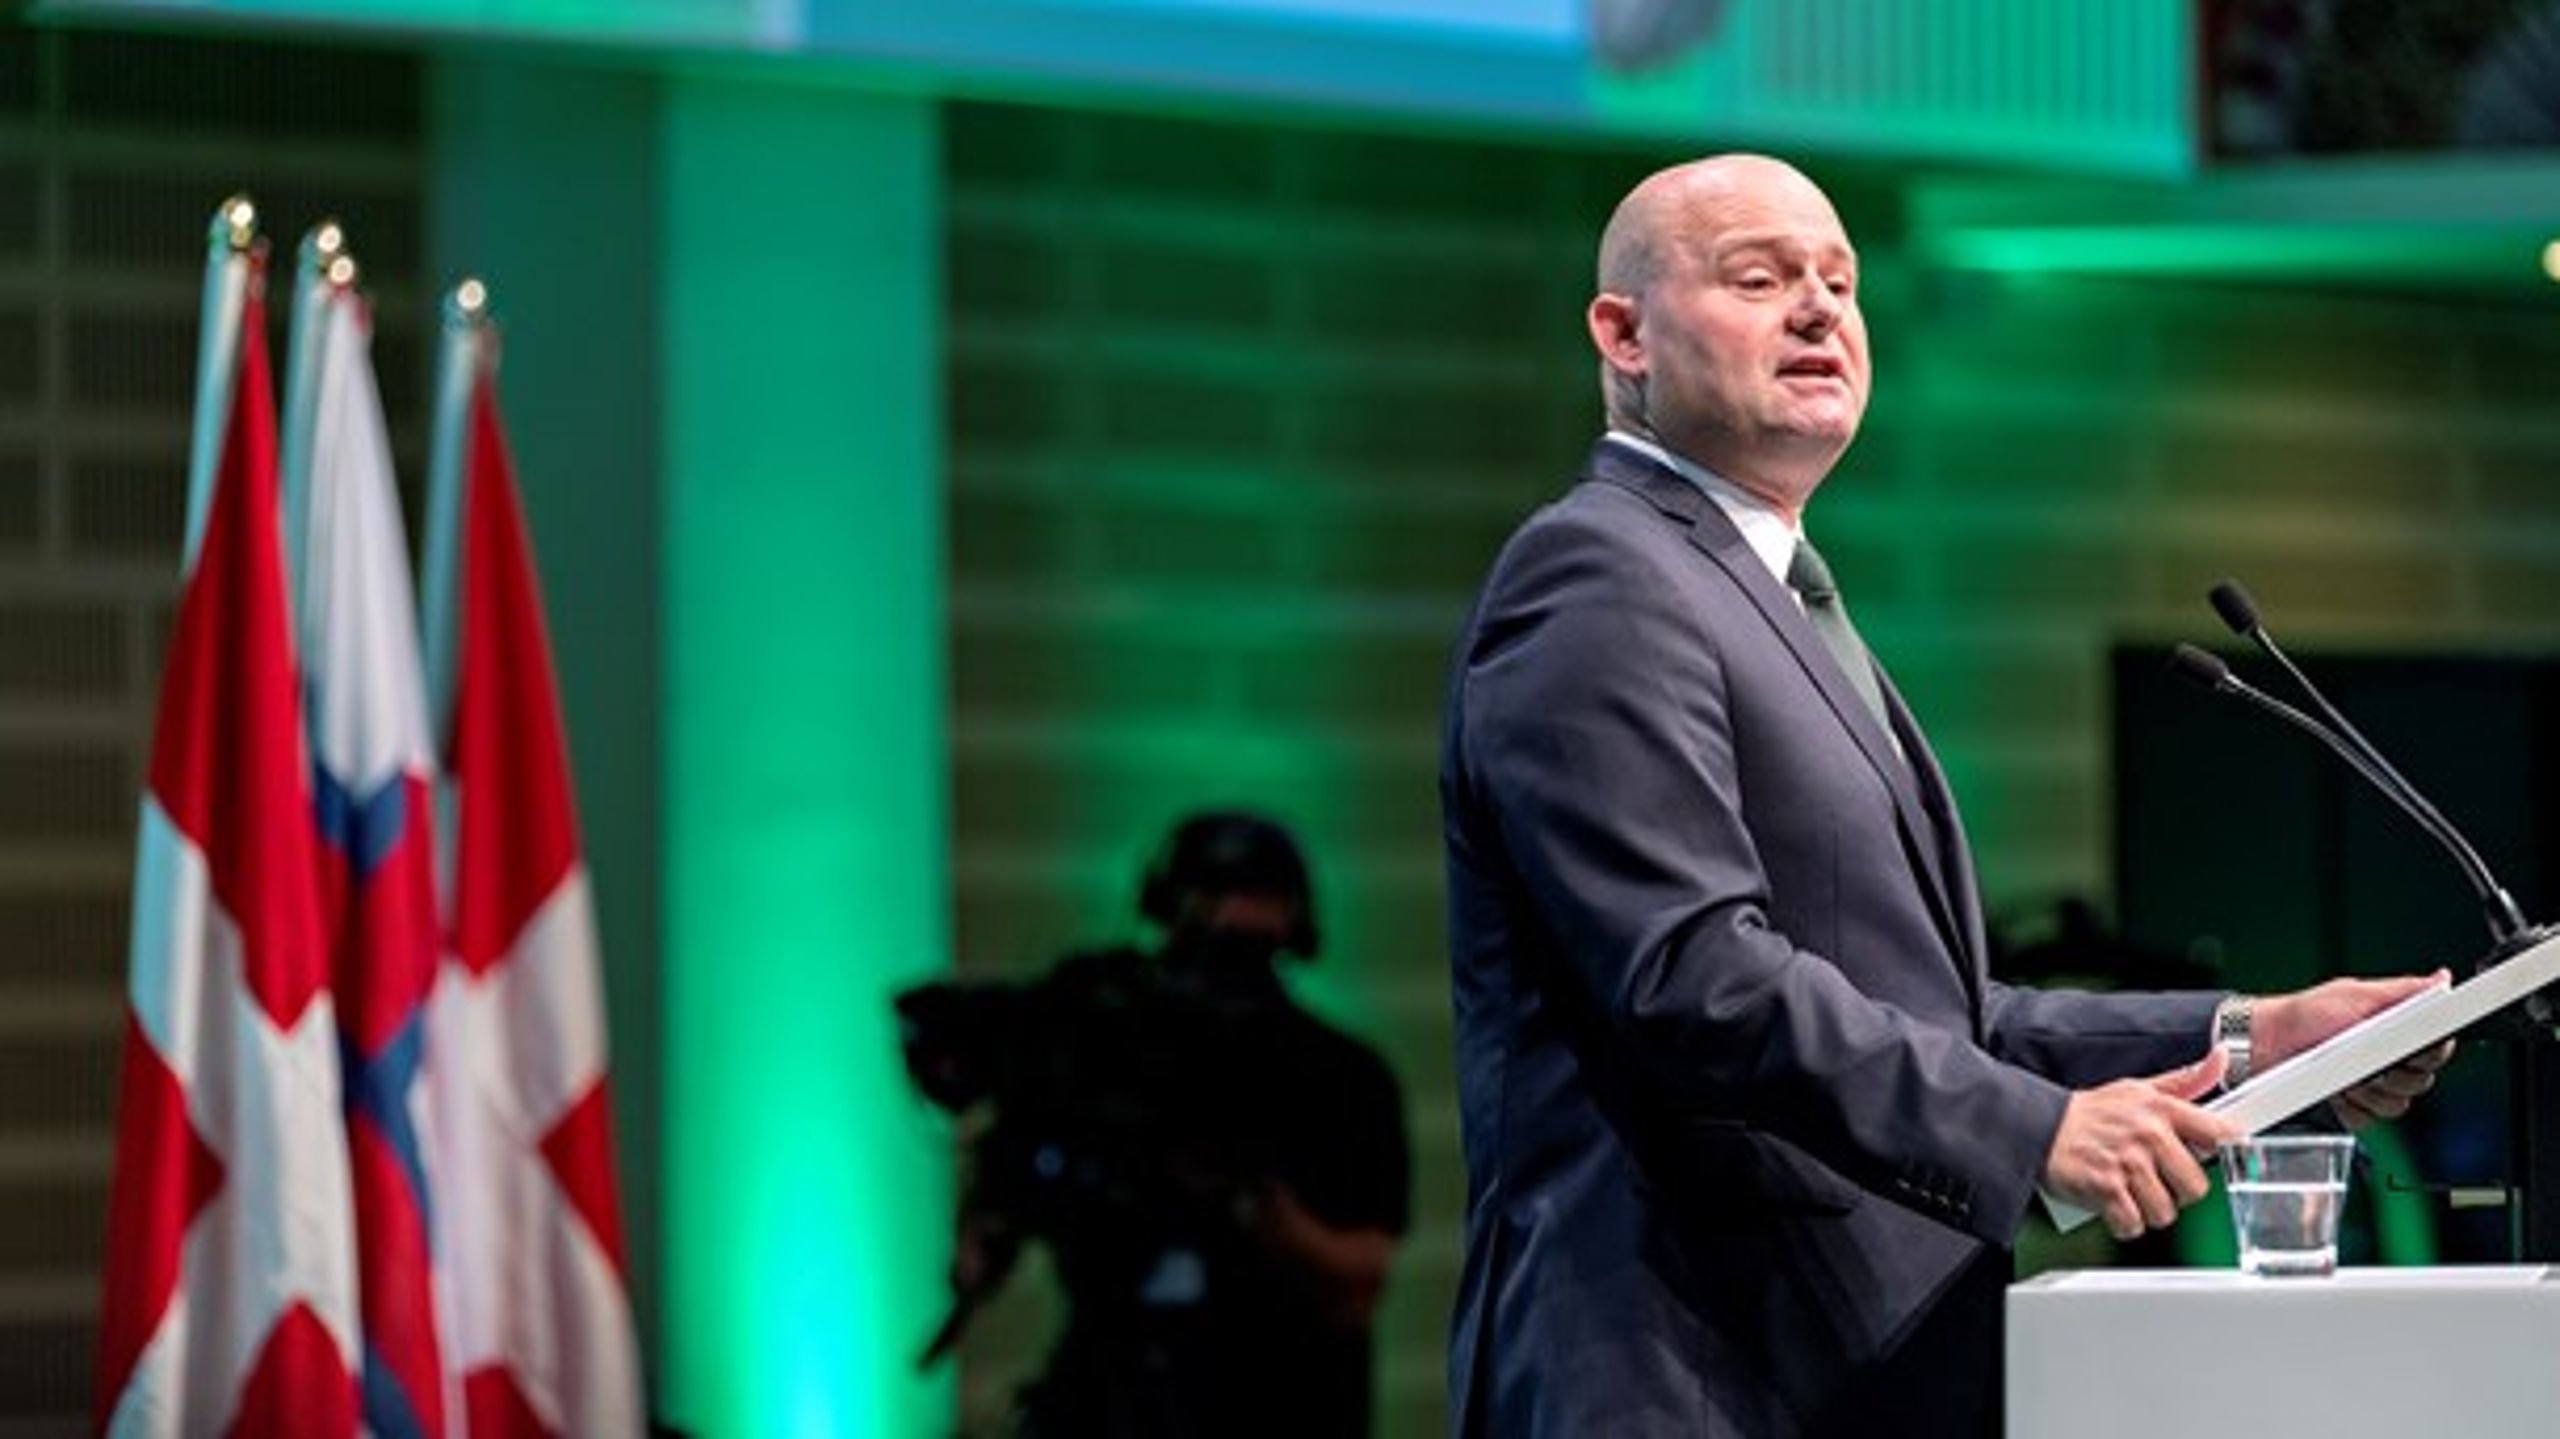 Konservatives formand, Søren Pape Poulsen, mener, at en artikel i Berlingske for nylig kan have skabt tvivl om partiets grønne profil.